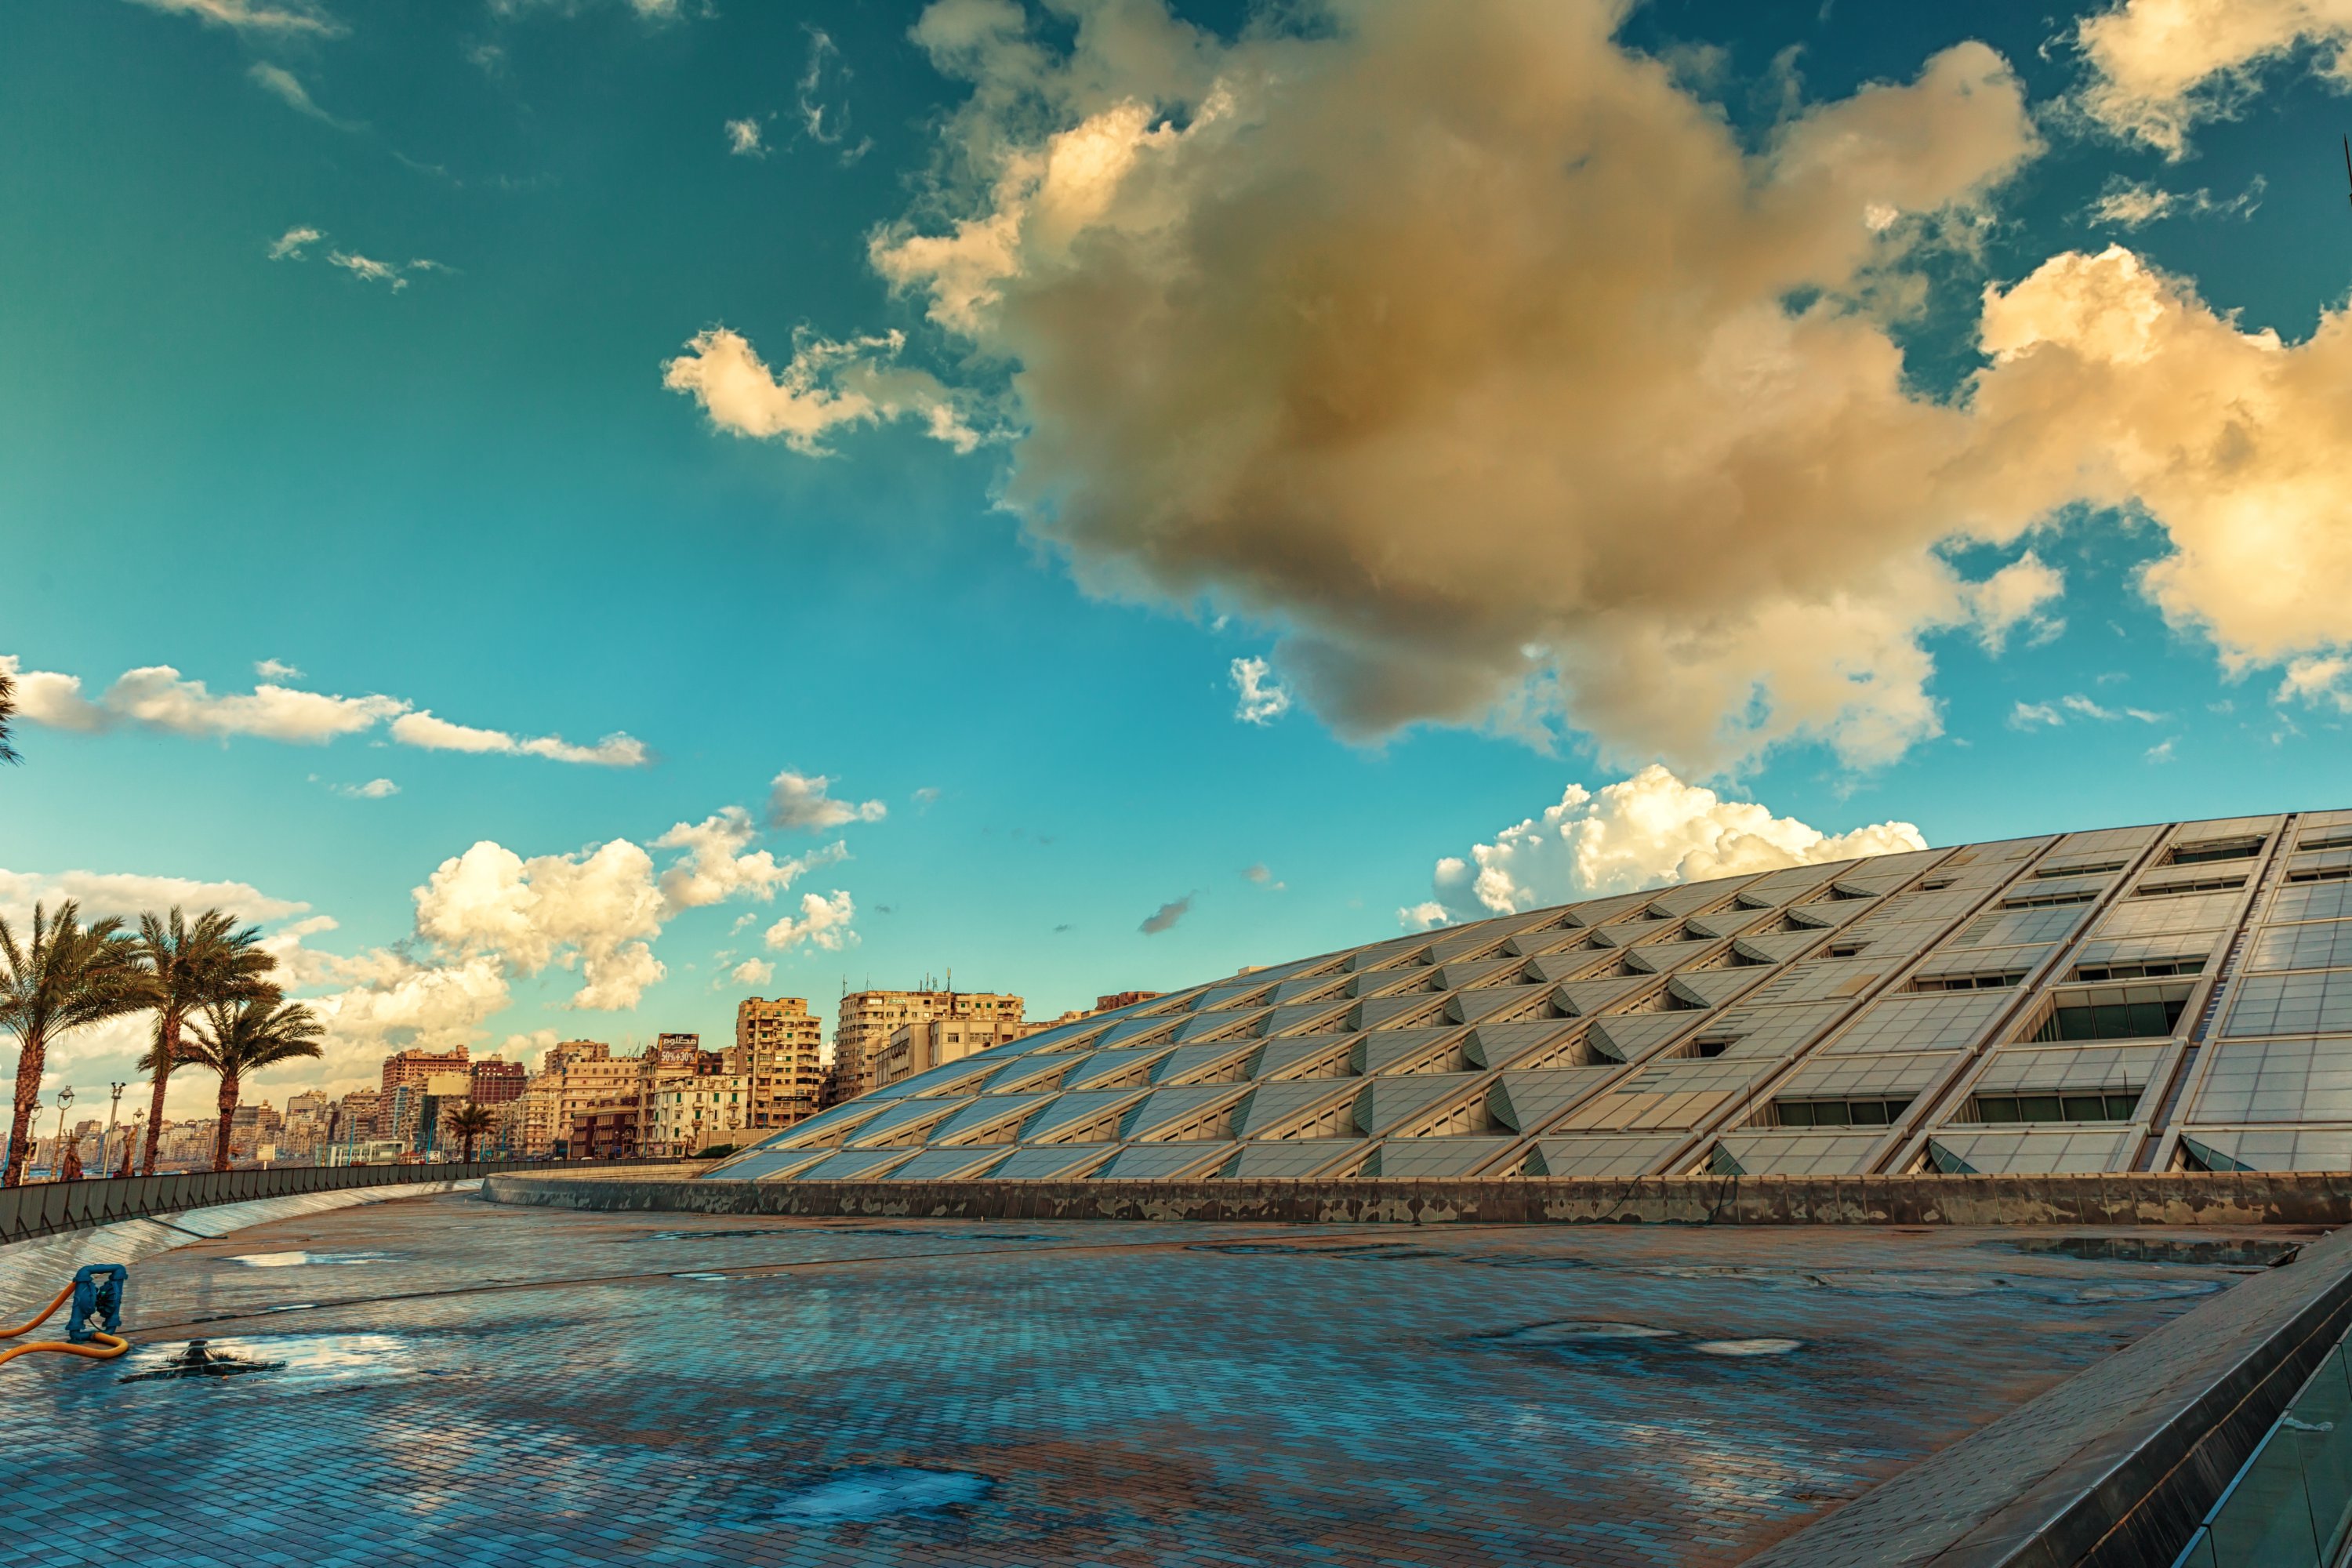 Bir zamanlar dünyanın en büyük kütüphanelerinden biri olan tarihi Büyük İskenderiye Kütüphanesi'nin anısına inşa edilen Bibliotheca Alexandrina'nın dış görünümü, İskenderiye, Mısır, 31 Aralık 2016. (Shutterstock Fotoğrafı)